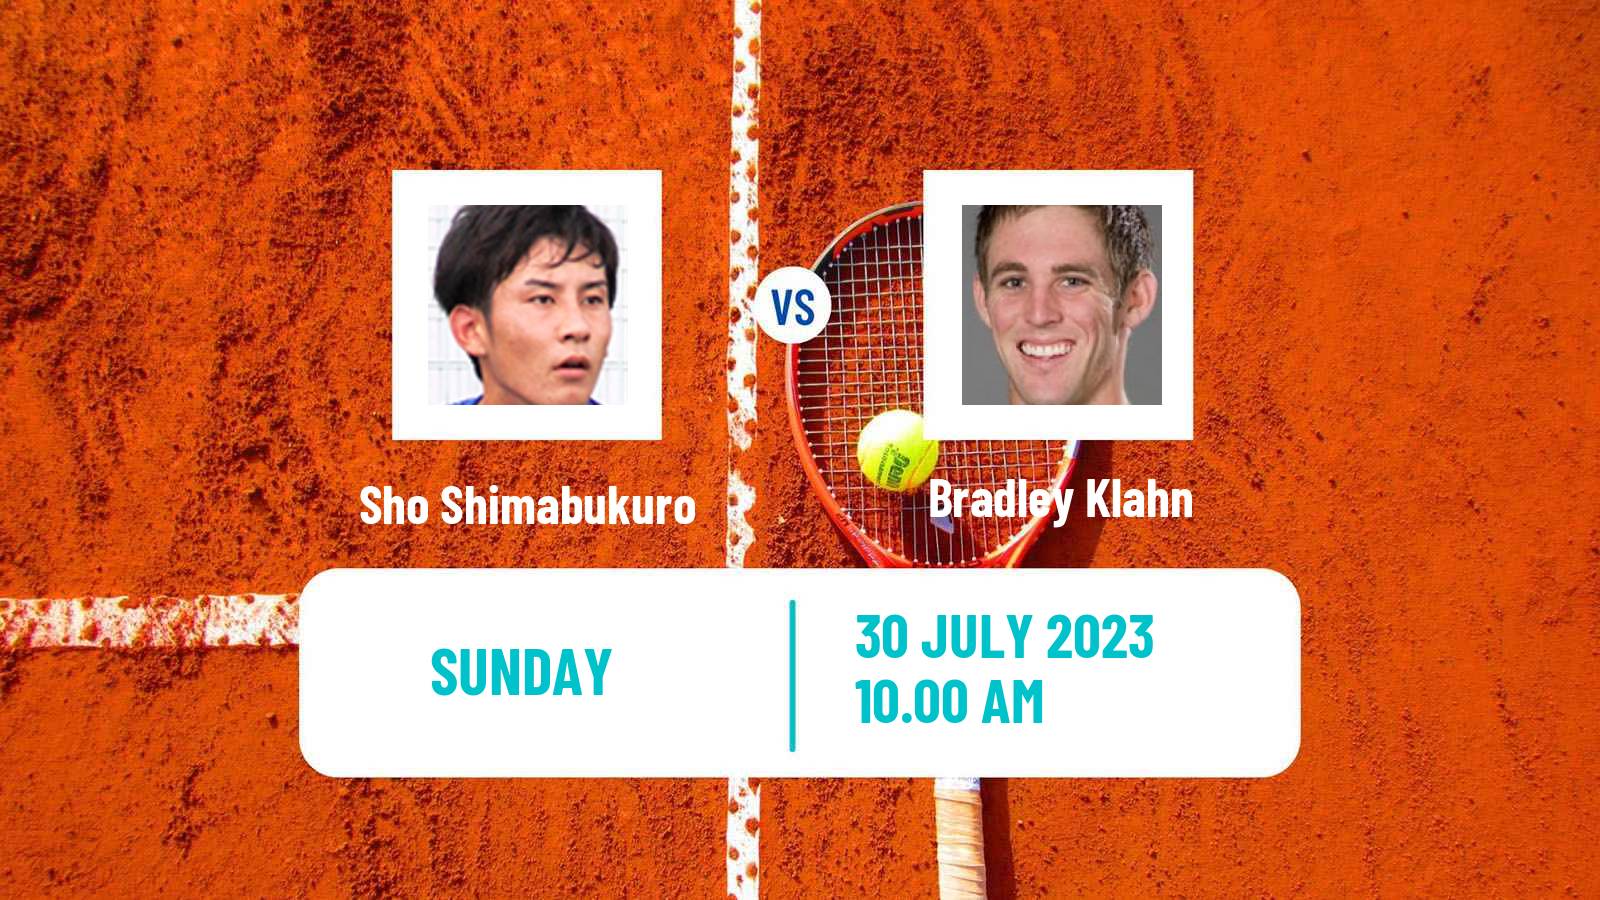 Tennis ATP Washington Sho Shimabukuro - Bradley Klahn